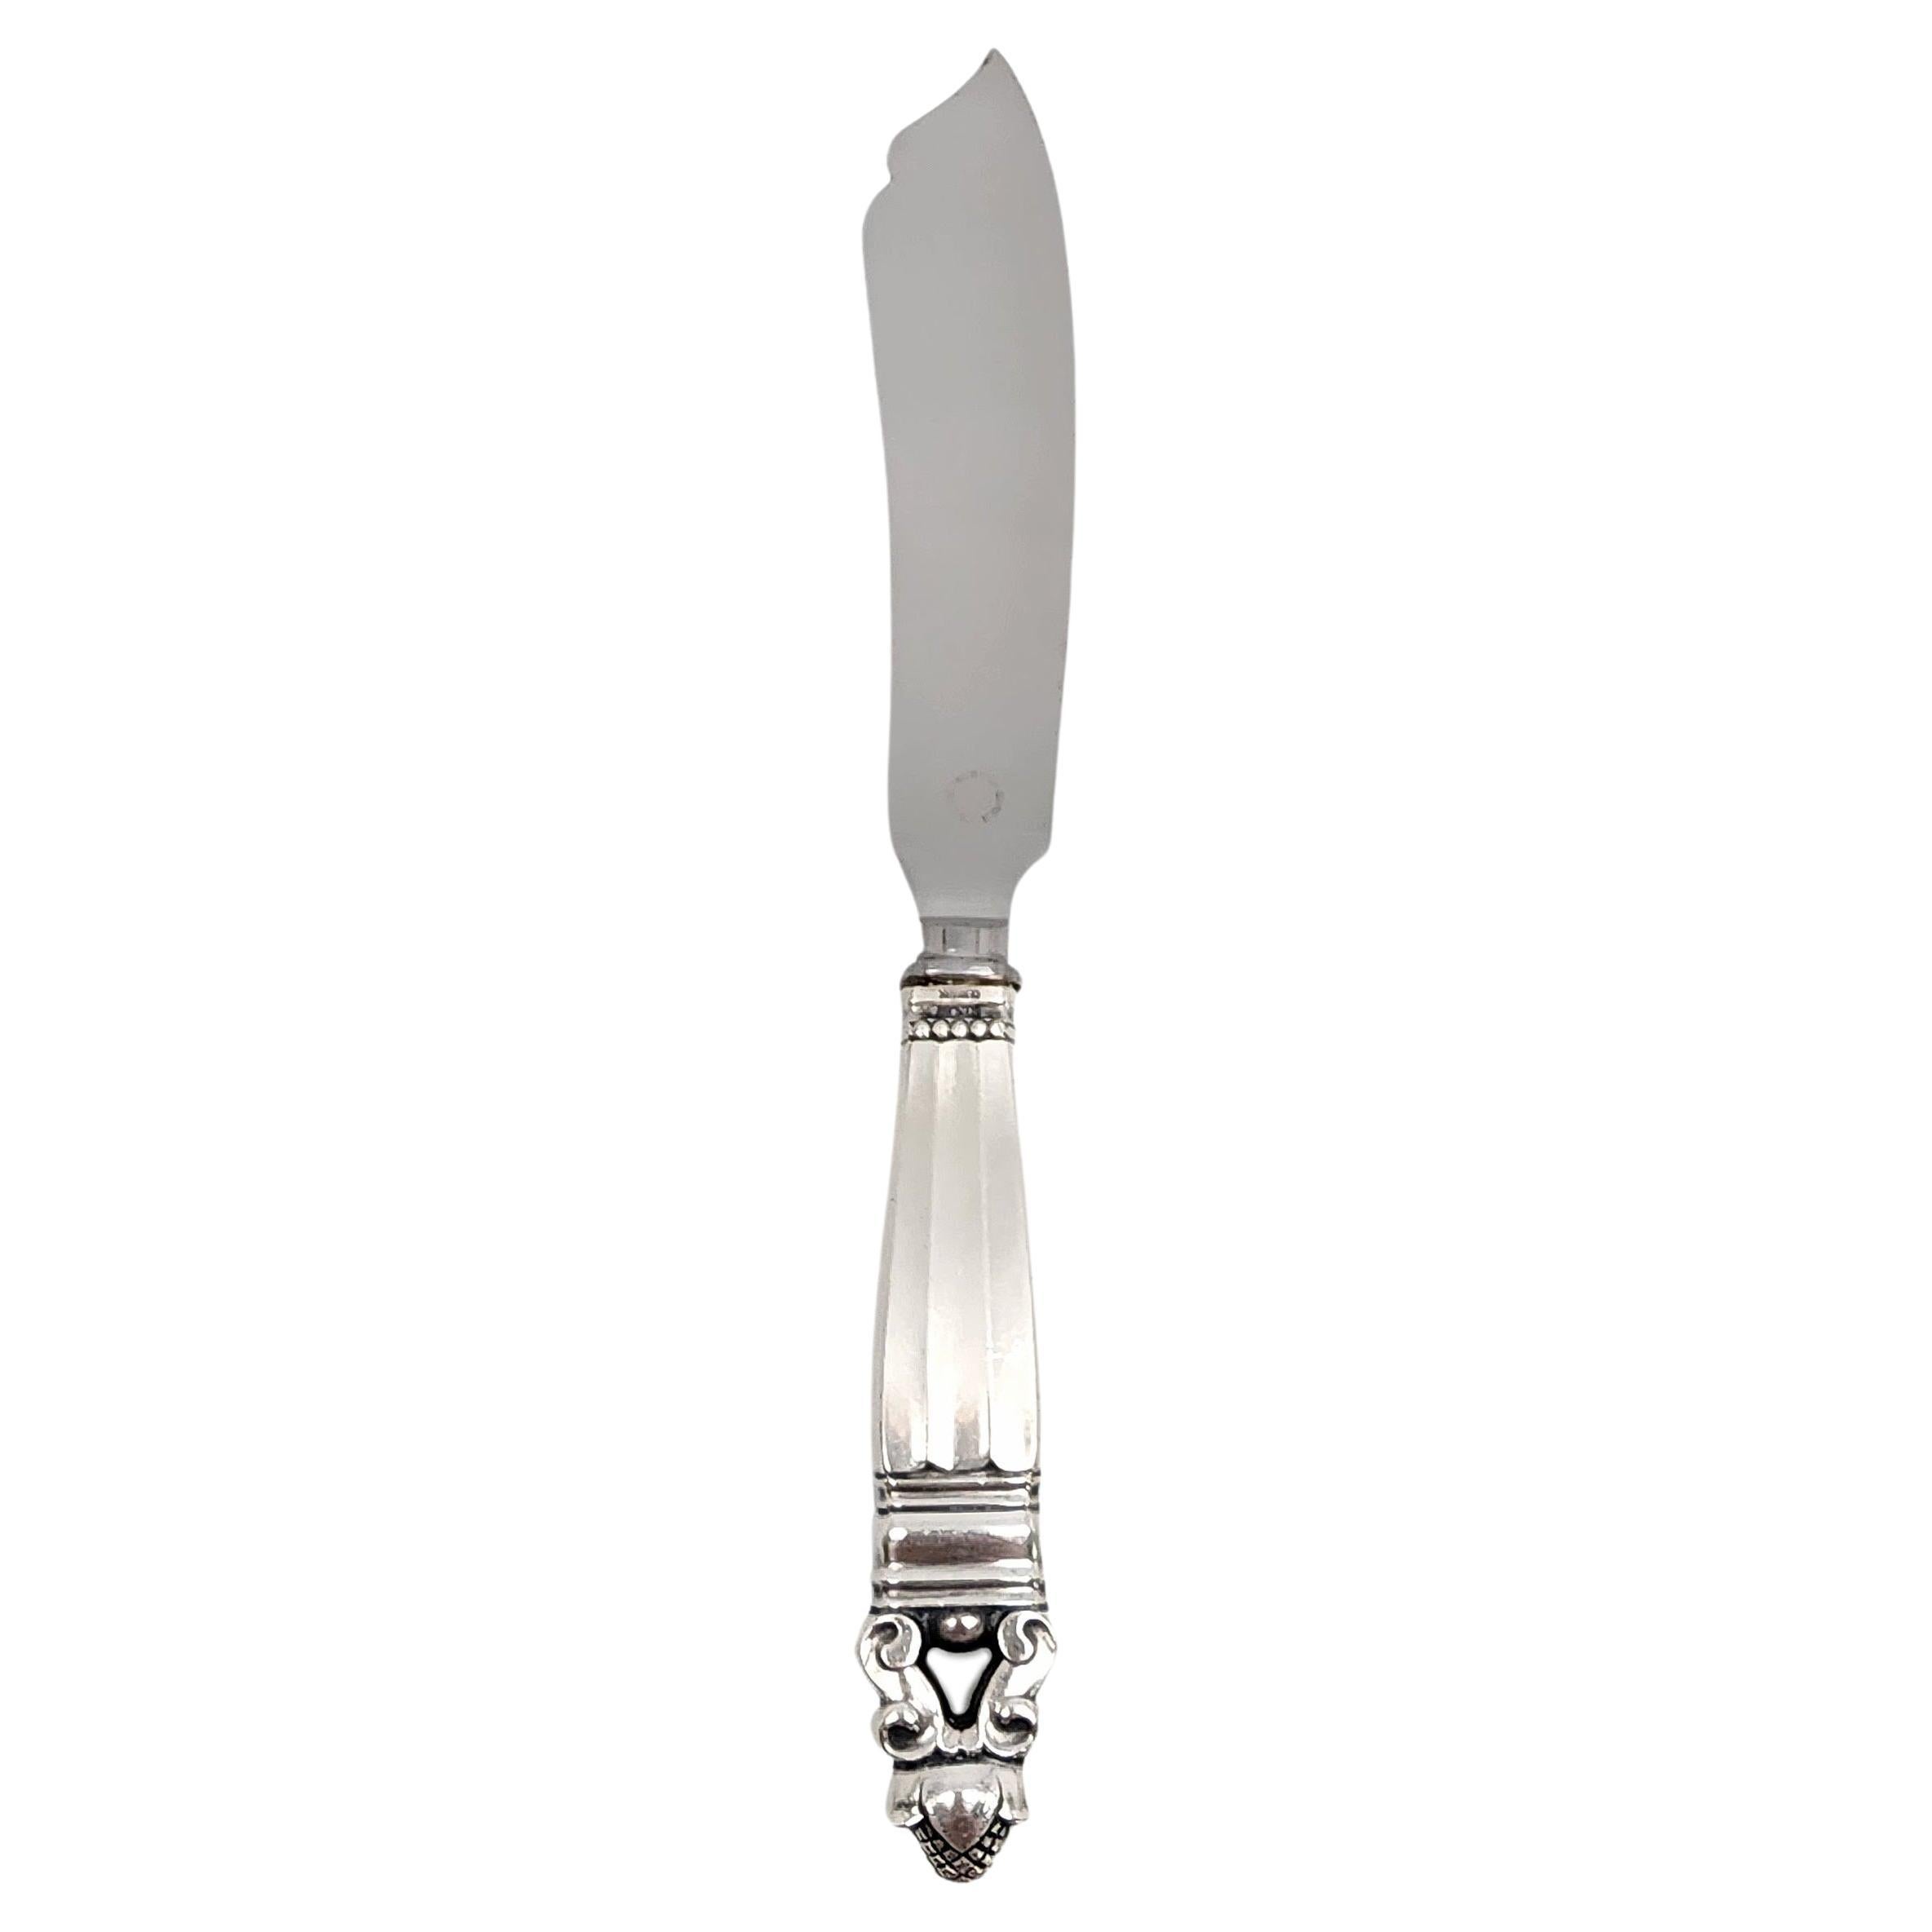 Jensen & Wendel Denmark Acorn Sterling Handle Stainless Blade Cake Knife #14714 For Sale